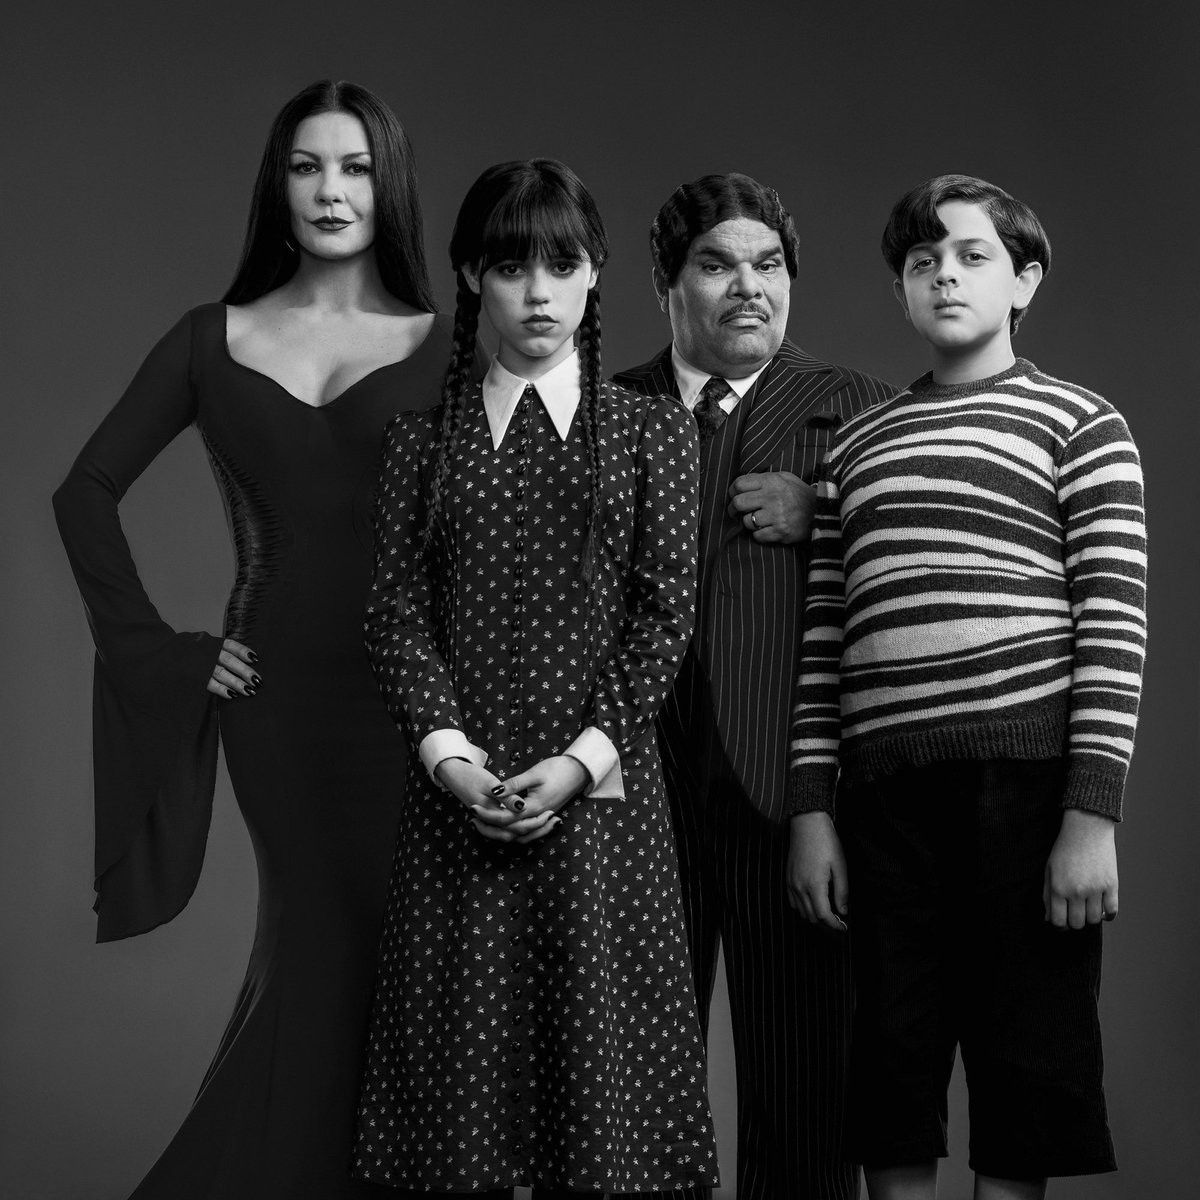 Un nouveau membre de la famille Addams apparaîtra dans la saison 2 de Mercredi.